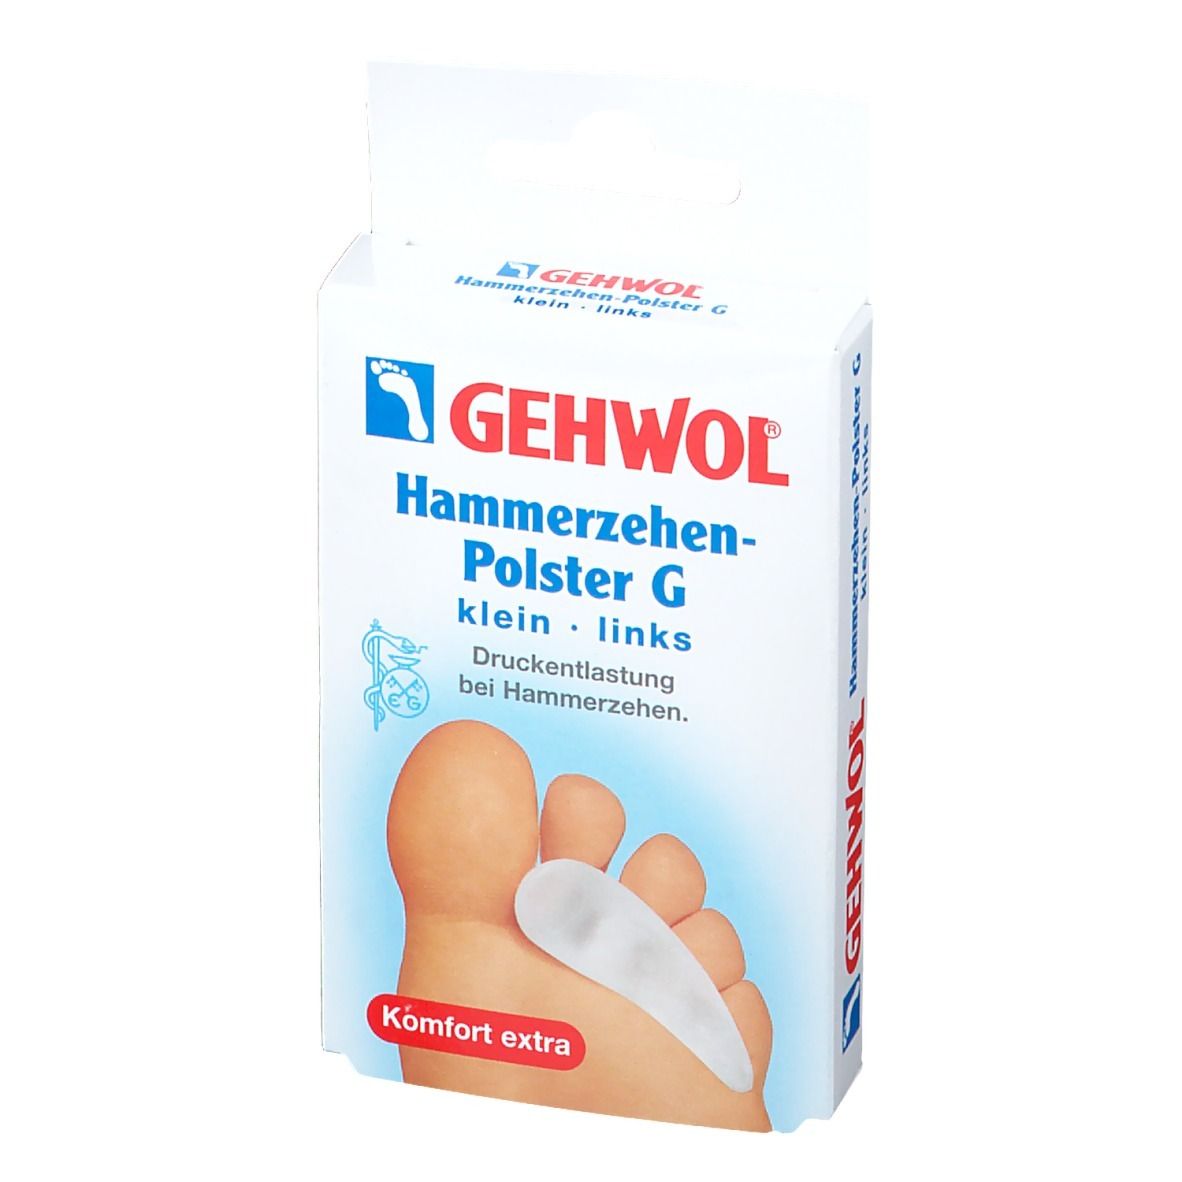 GEHWOL® Hammerzehen-Polster G links klein